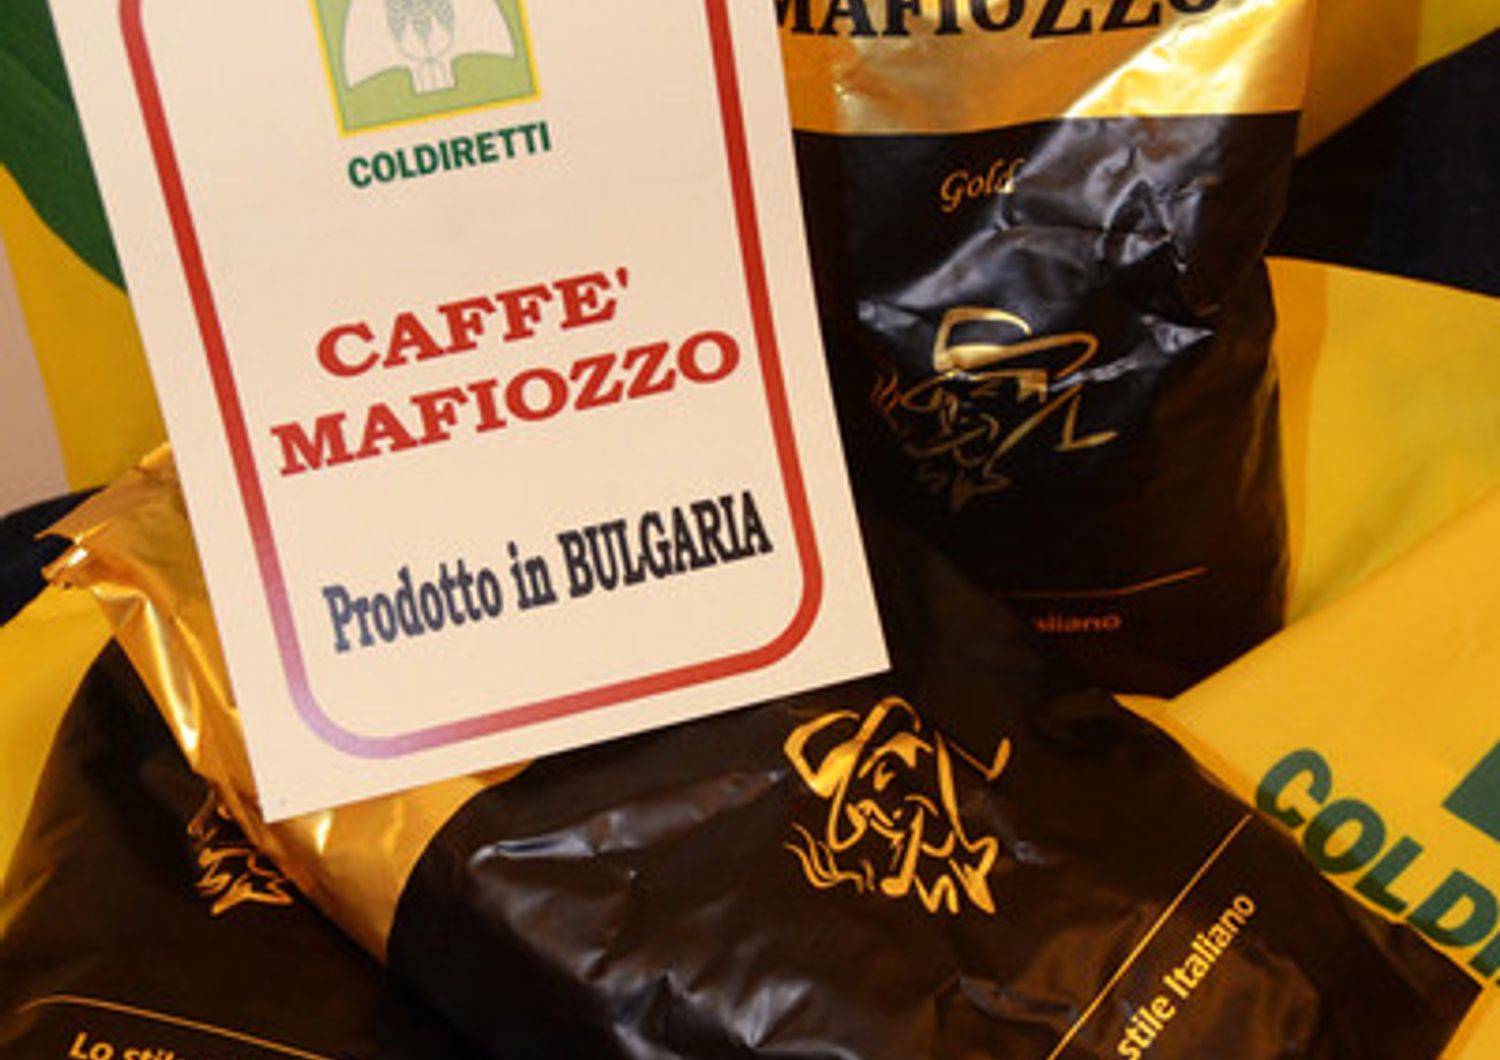 caffe' mafiozzo Coldiretti (foto da Coldiretti)&nbsp;